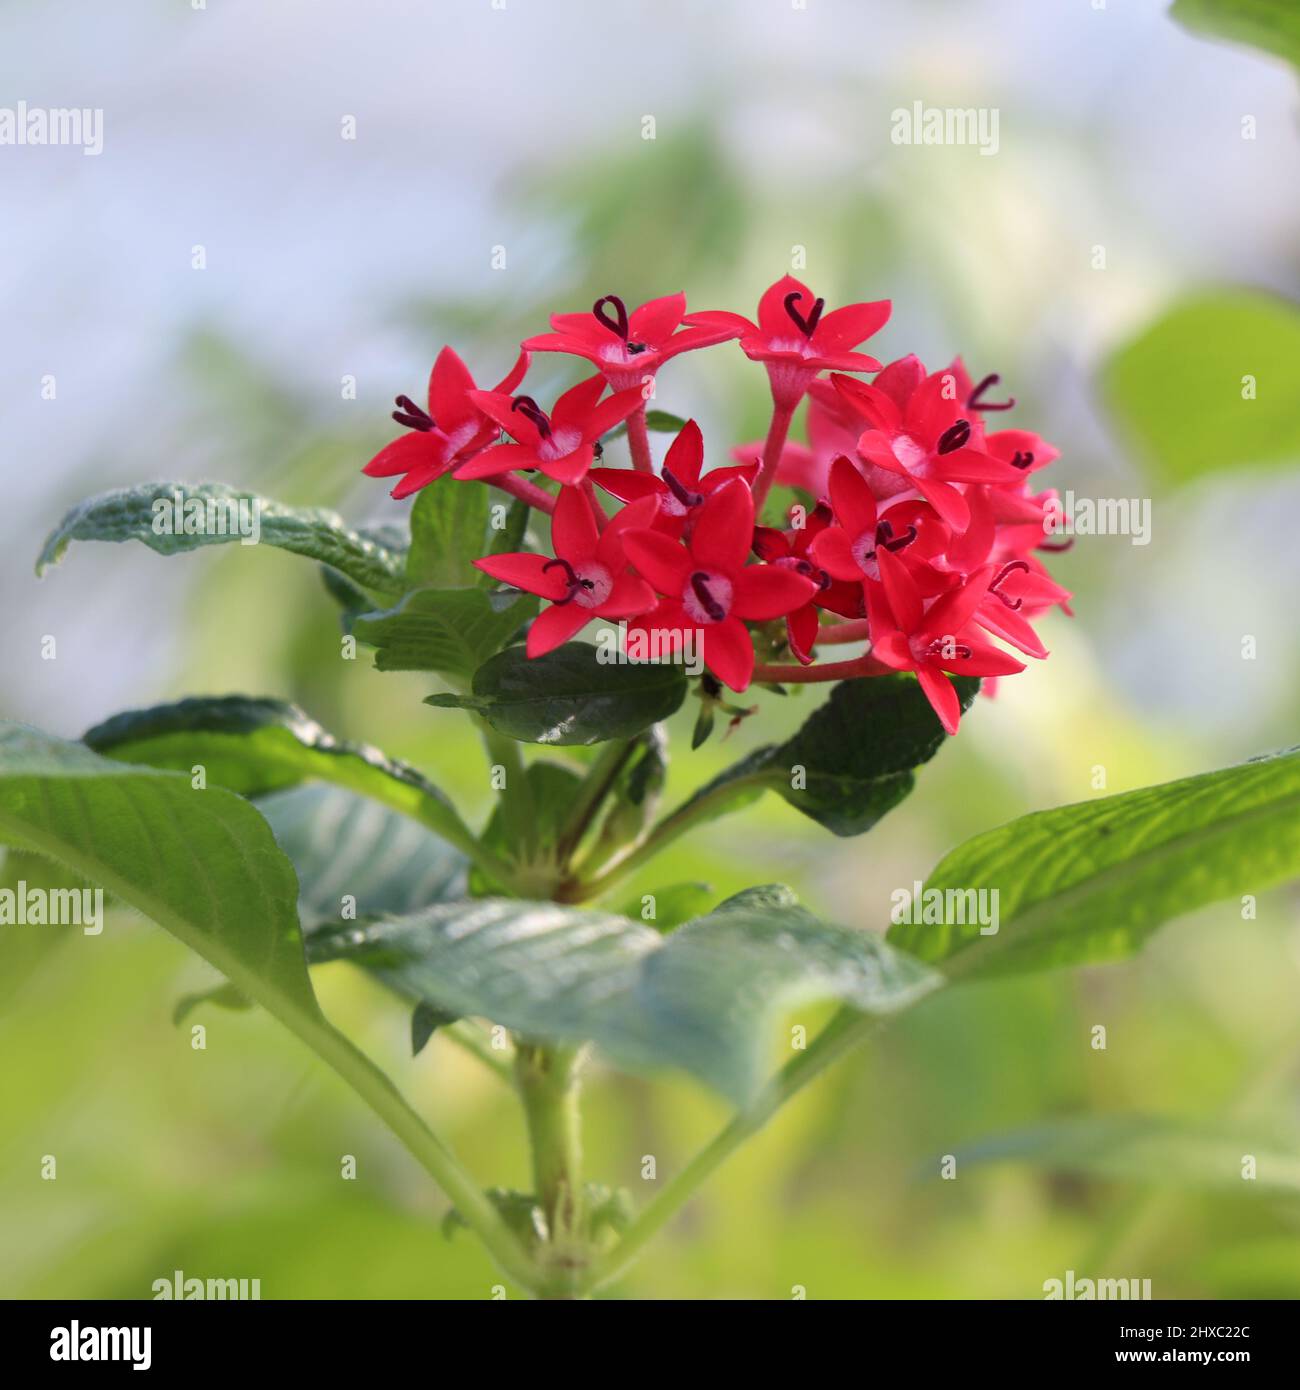 Pink flower of Pentas lanceolata Stock Photo